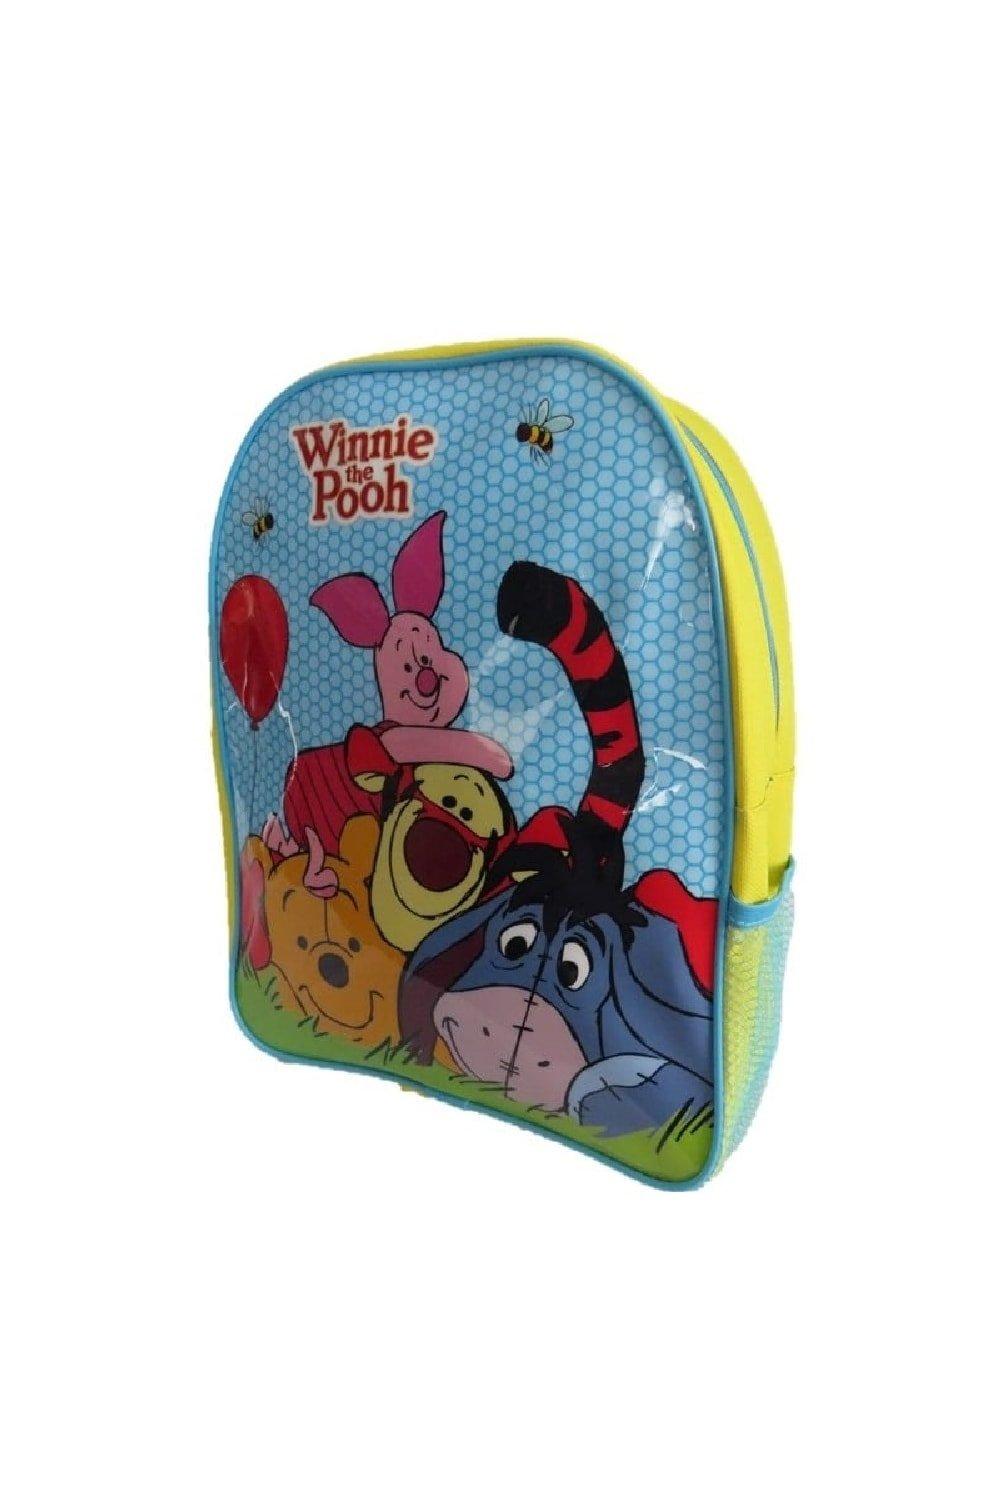 Рюкзак Винни-Пуха Winnie The Pooh, желтый мягкий рюкзак винни пух winnie the pooh